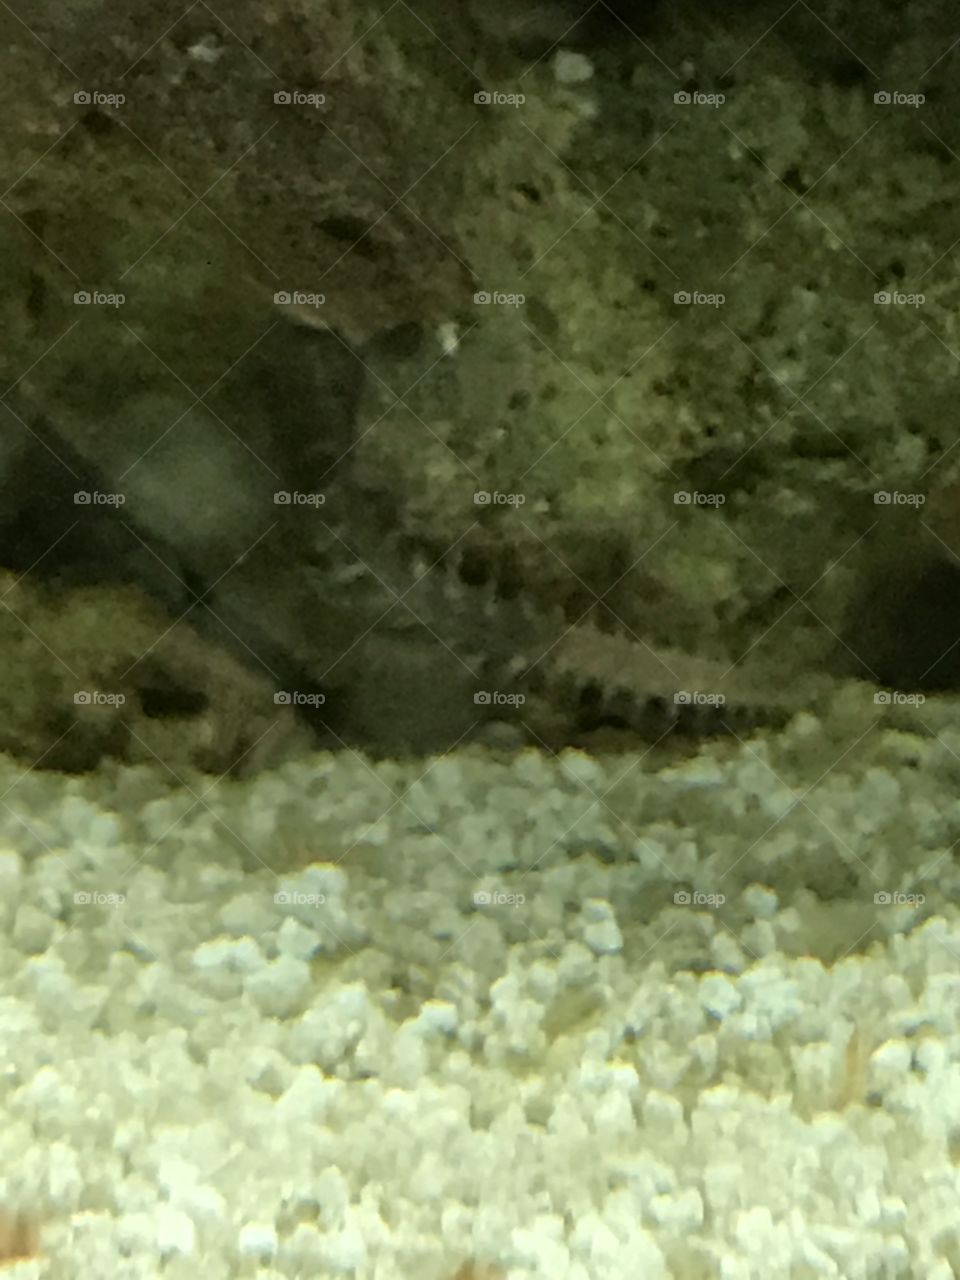 Aquarium bristle worm